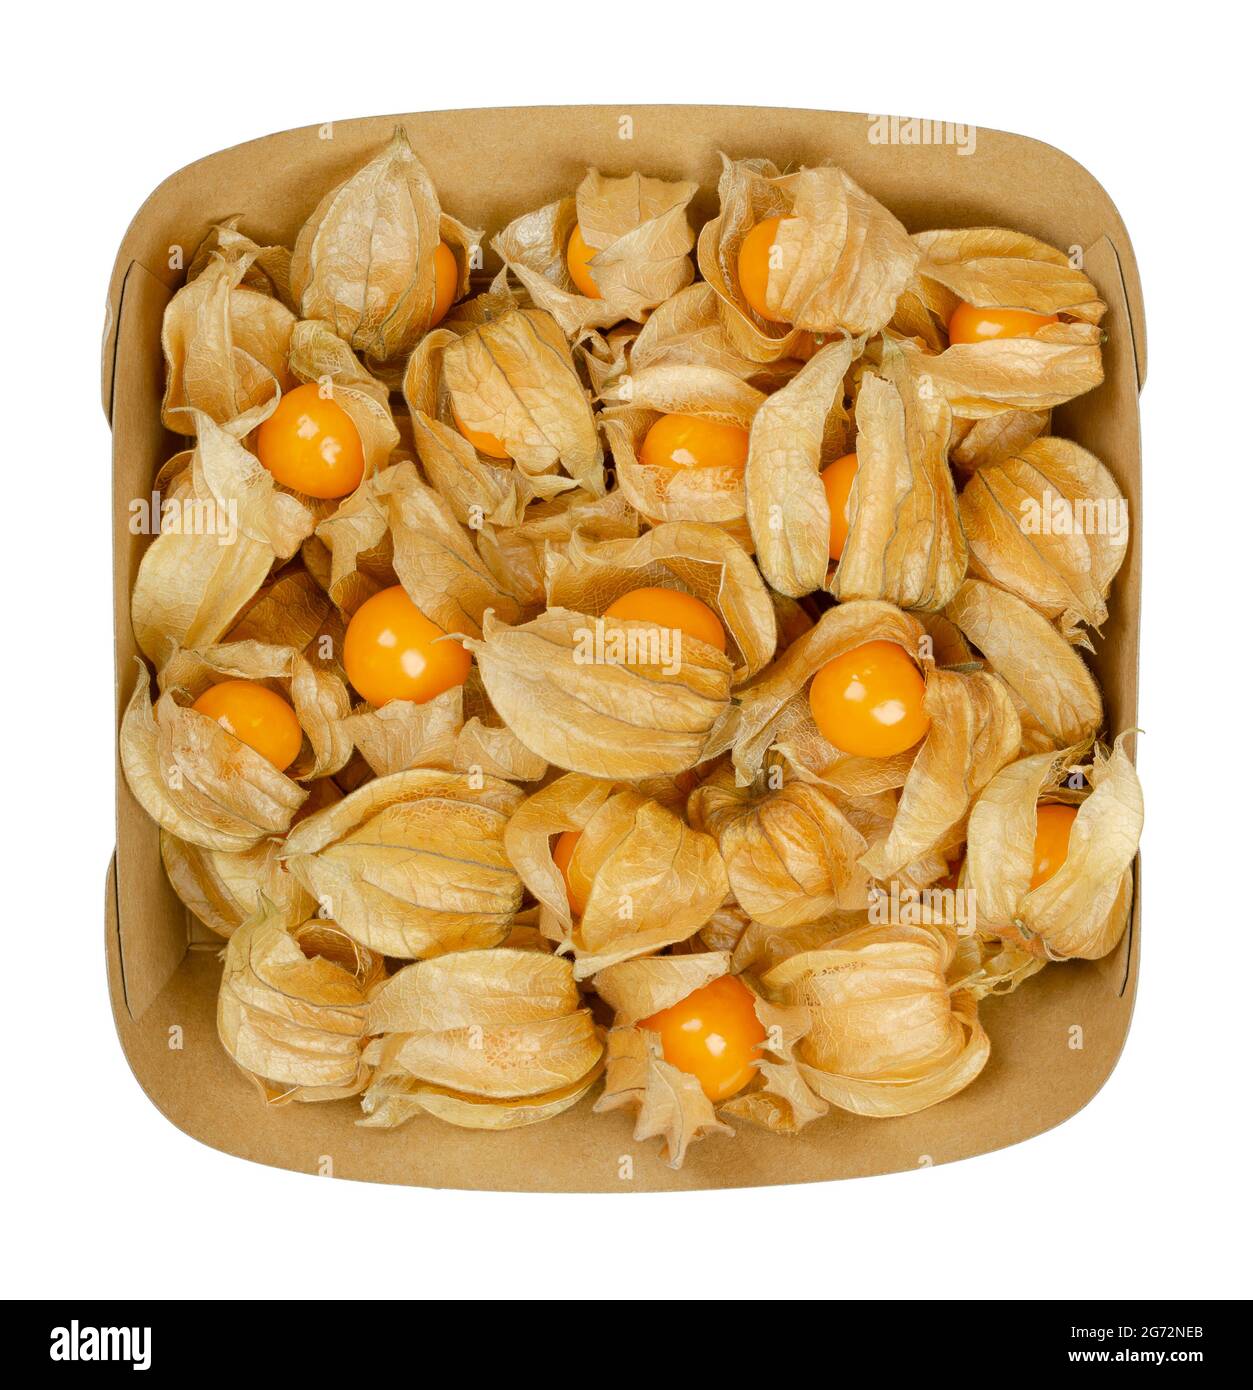 Frische Goldbeeren in ihrer Schale, in einem Papiersnacktray. Auch gemahlene Kirsche, Kap-Stachelbeere, Ukuva oder Poha, Früchte von Physalis peruviana. Stockfoto